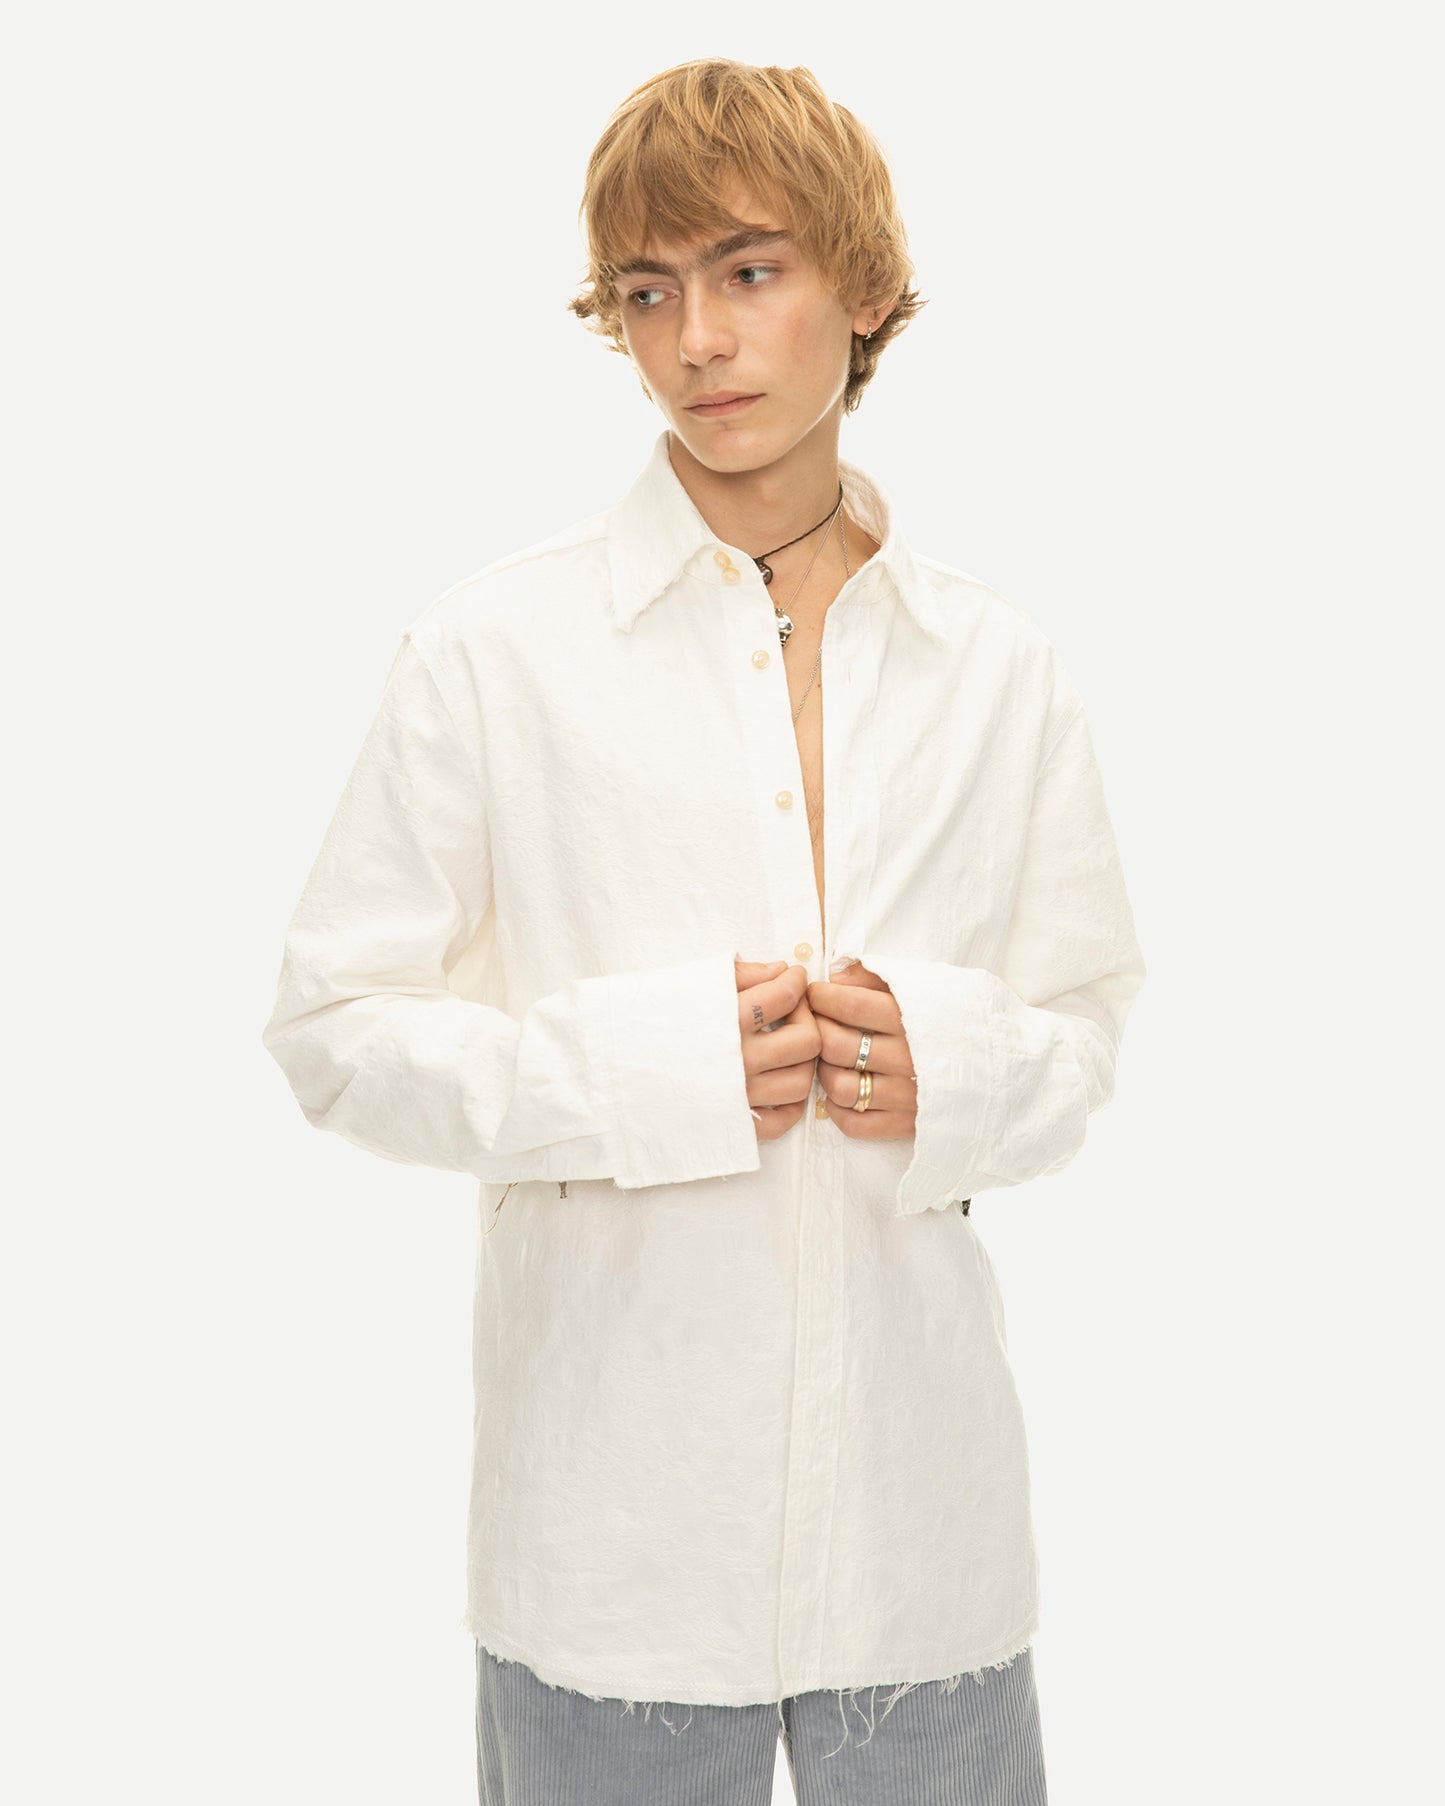 Chemise de luxe pour homme Erevan, à grand col et bords francs, jacquard de coton blanc, fabriquée au portugal